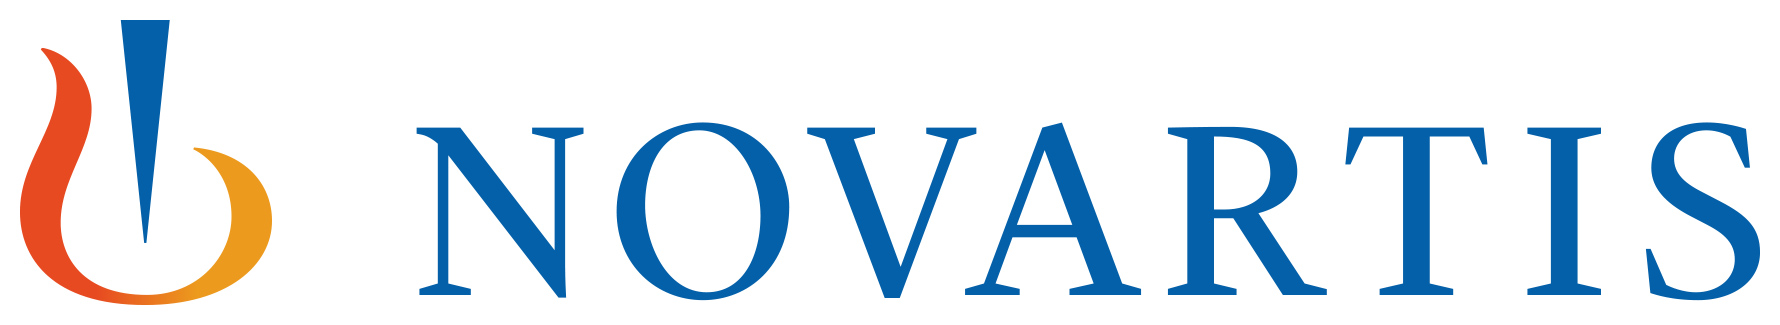 novartis logo copy